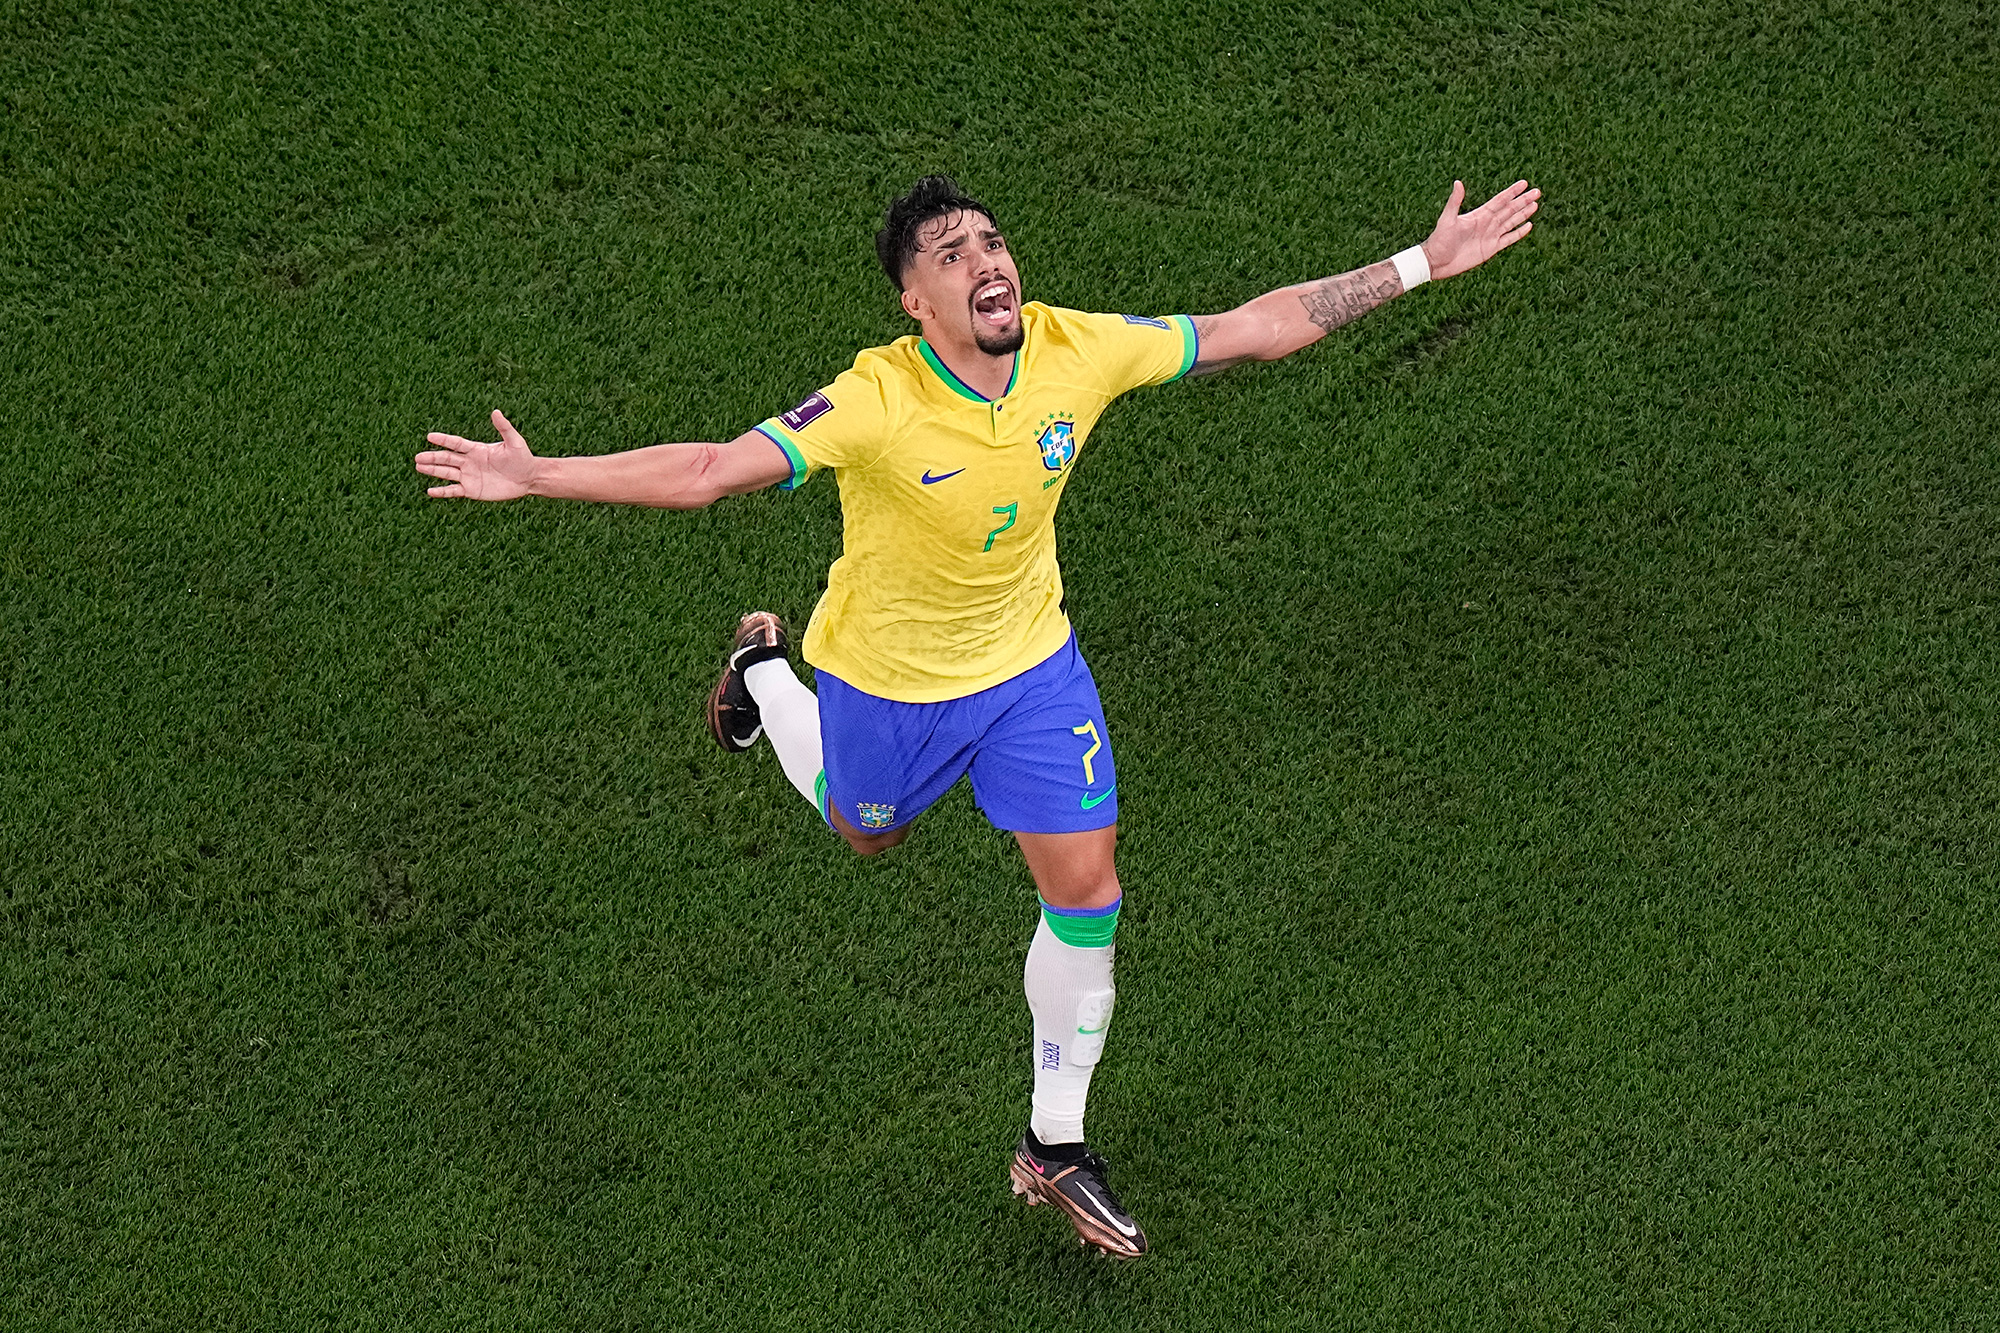 Lucas Paqueta celebrates scoring Brazil's fourth goal.